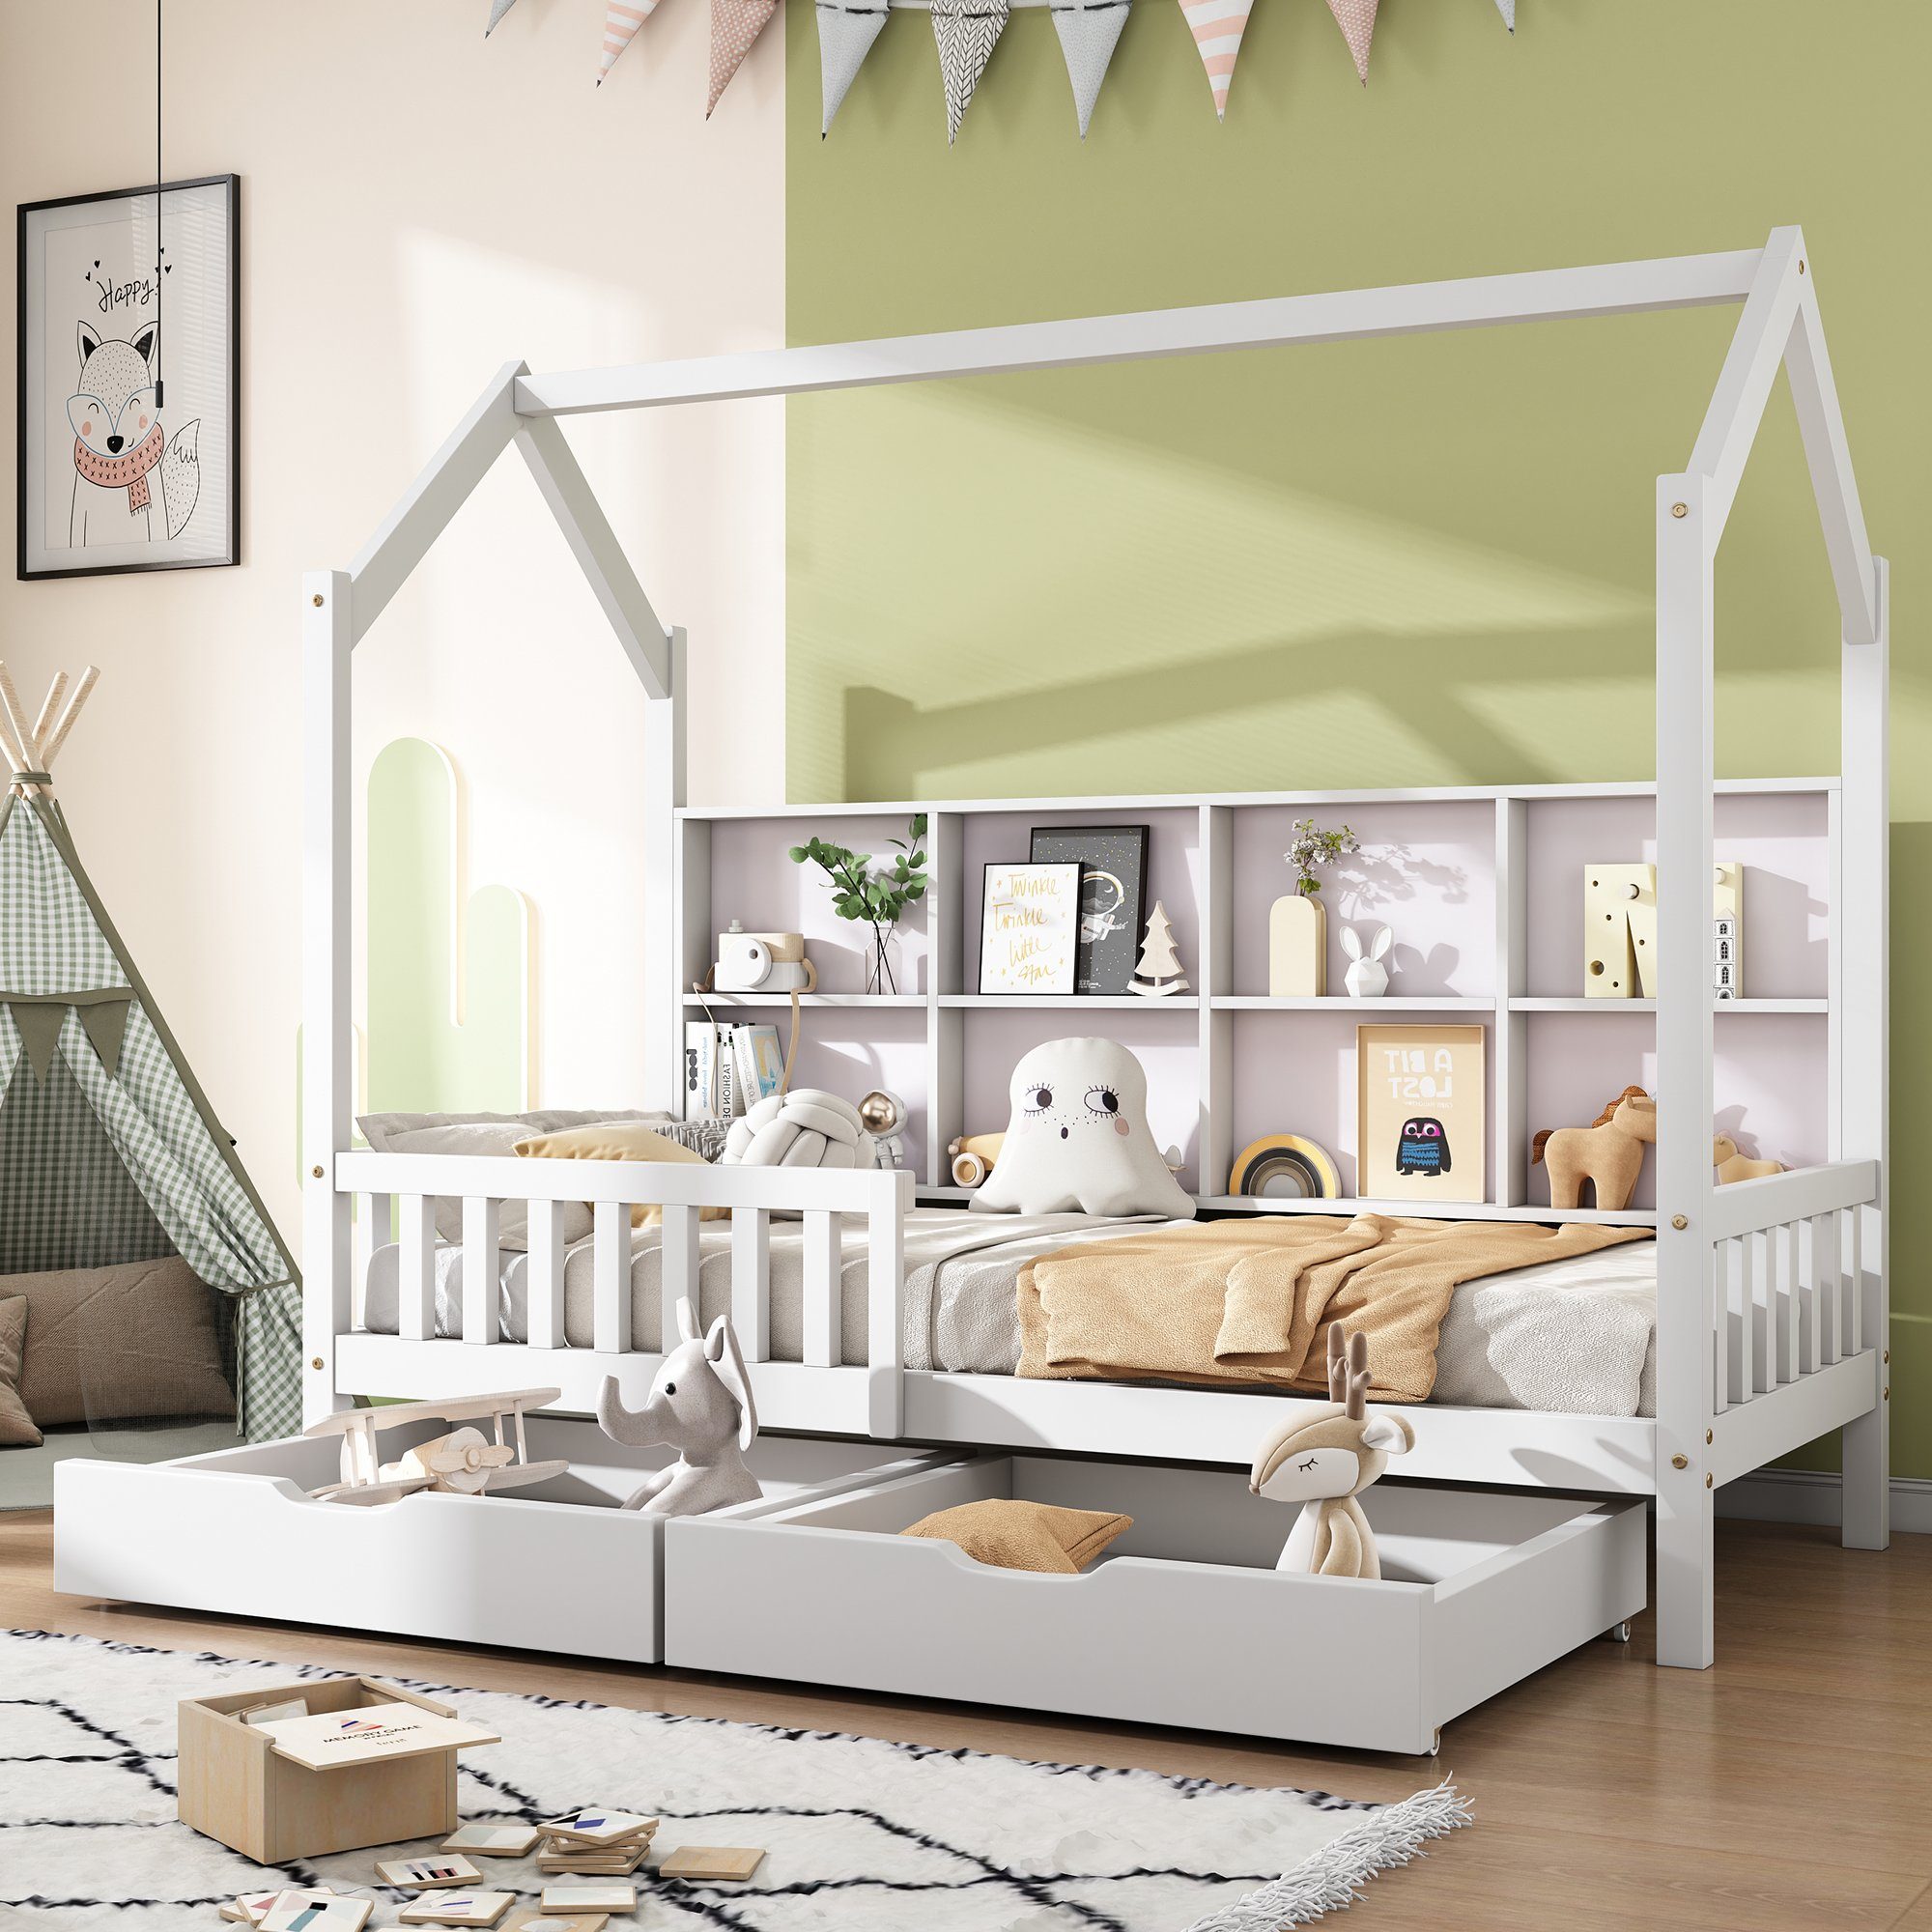 SOFTWEARY Kinderbett Hausbett mit 2 Schubladen und Lattenrost (90x200 cm), Einzelbett inkl. Rausfallschutz, Kiefer